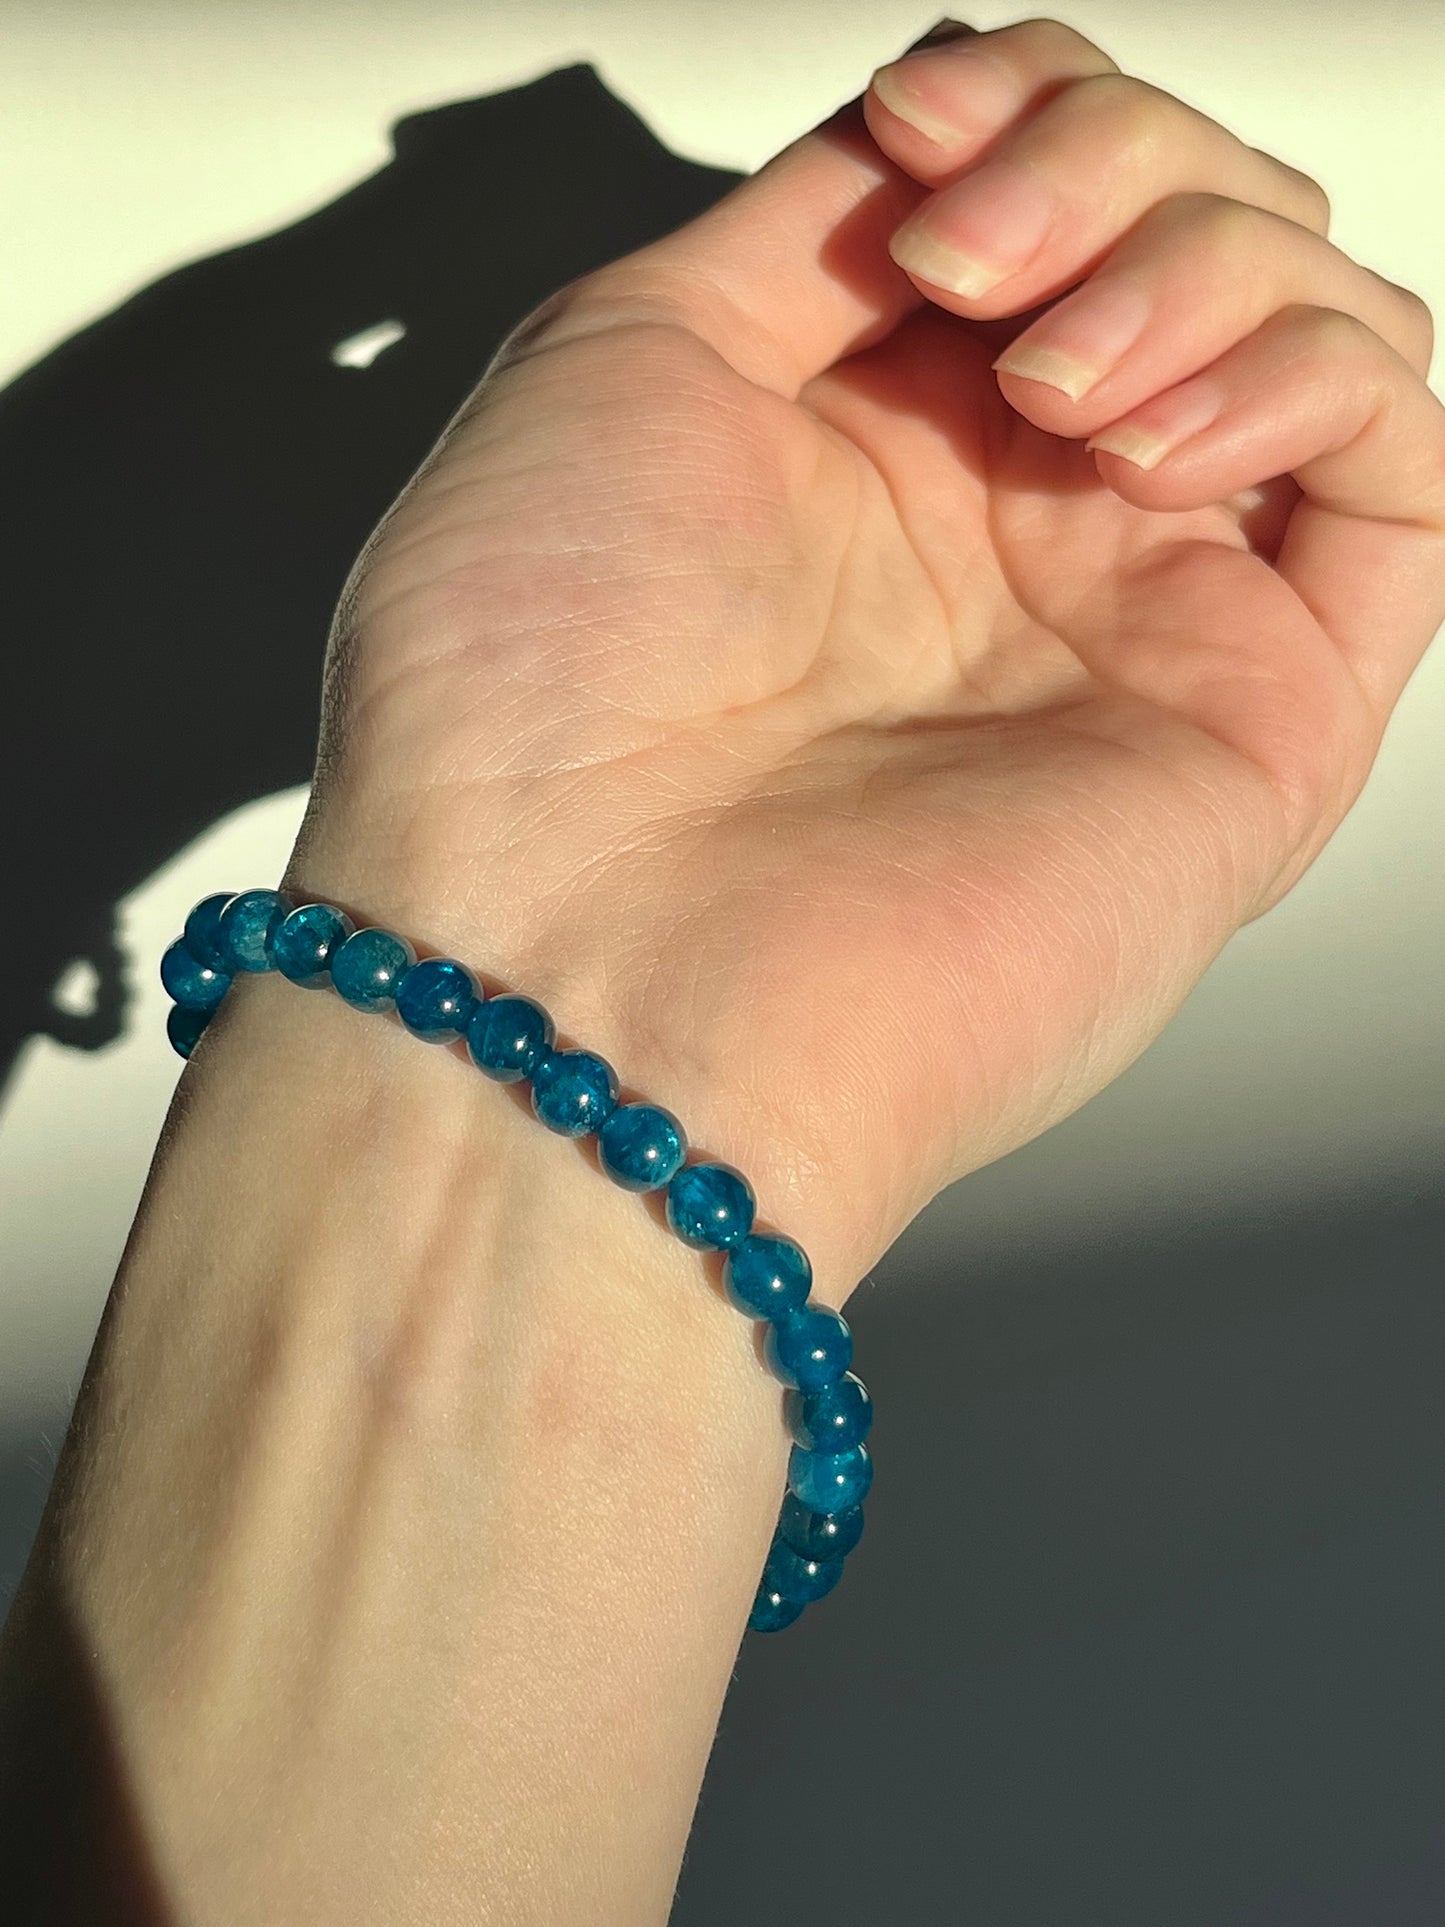 蓝色磷灰石 6 毫米珠状手链